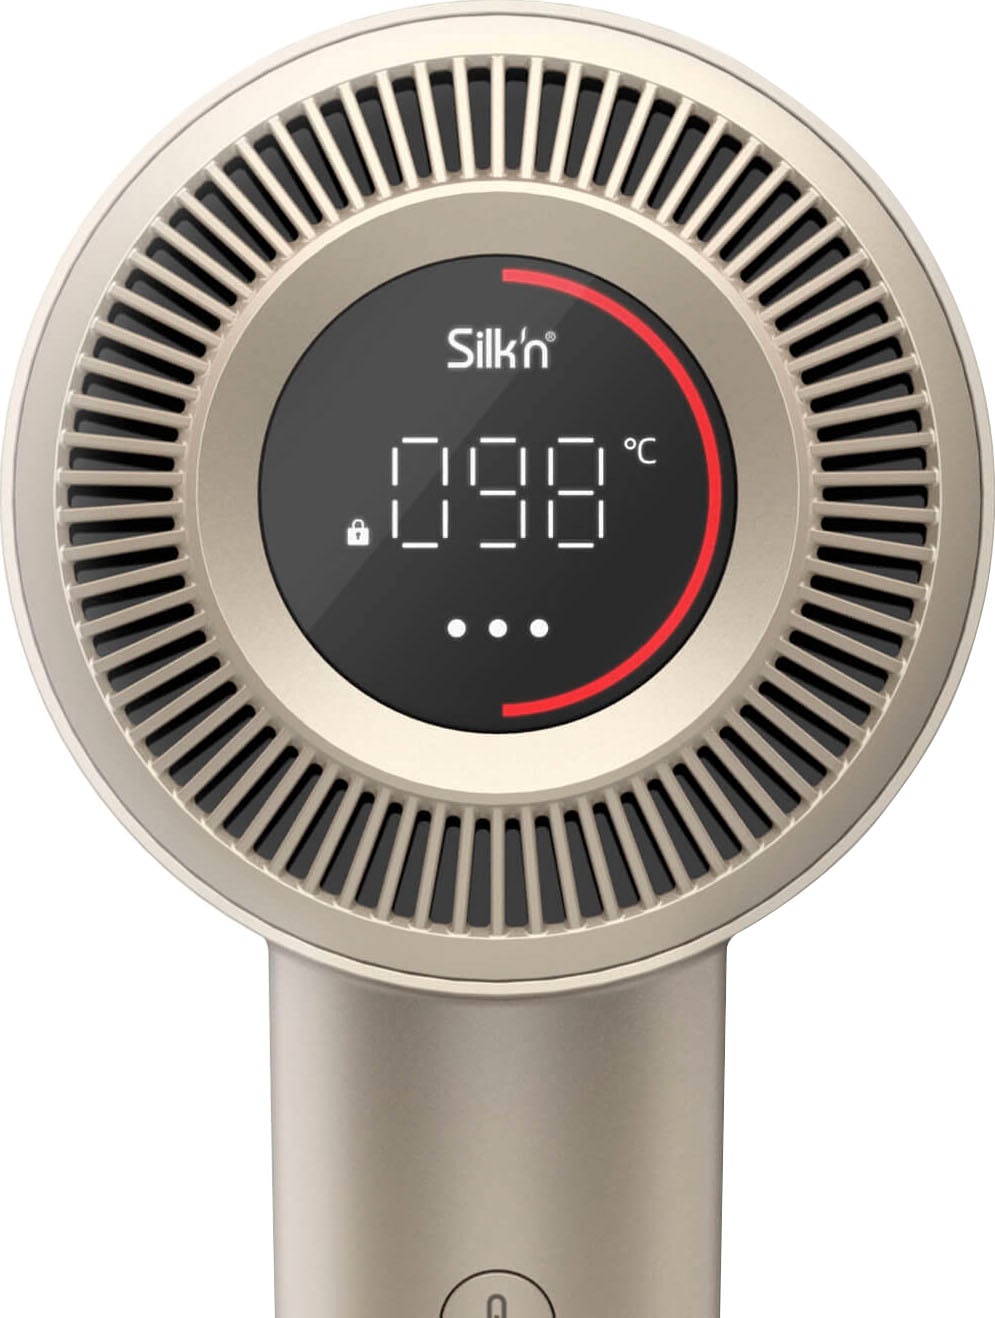 Silk'n Ionic-Haartrockner »SilkyAir Pro Modell 2024«, 1600 W, 3 Aufsätze